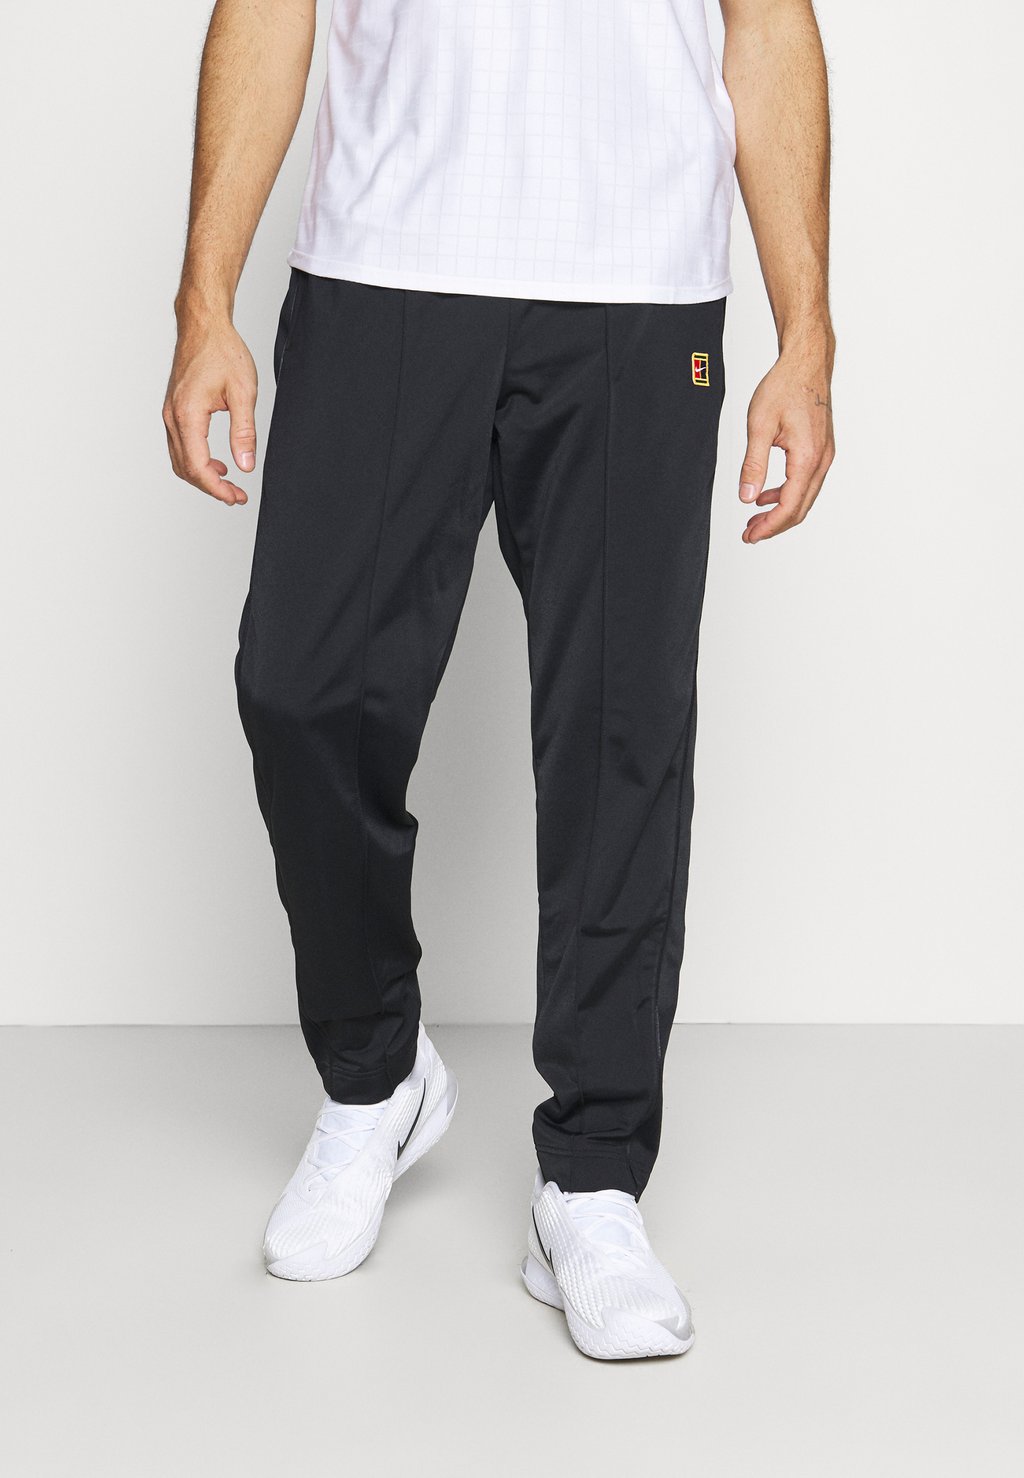 Спортивные брюки HERITAGE PANT Nike, черный спортивные брюки pant taper nike черный белый